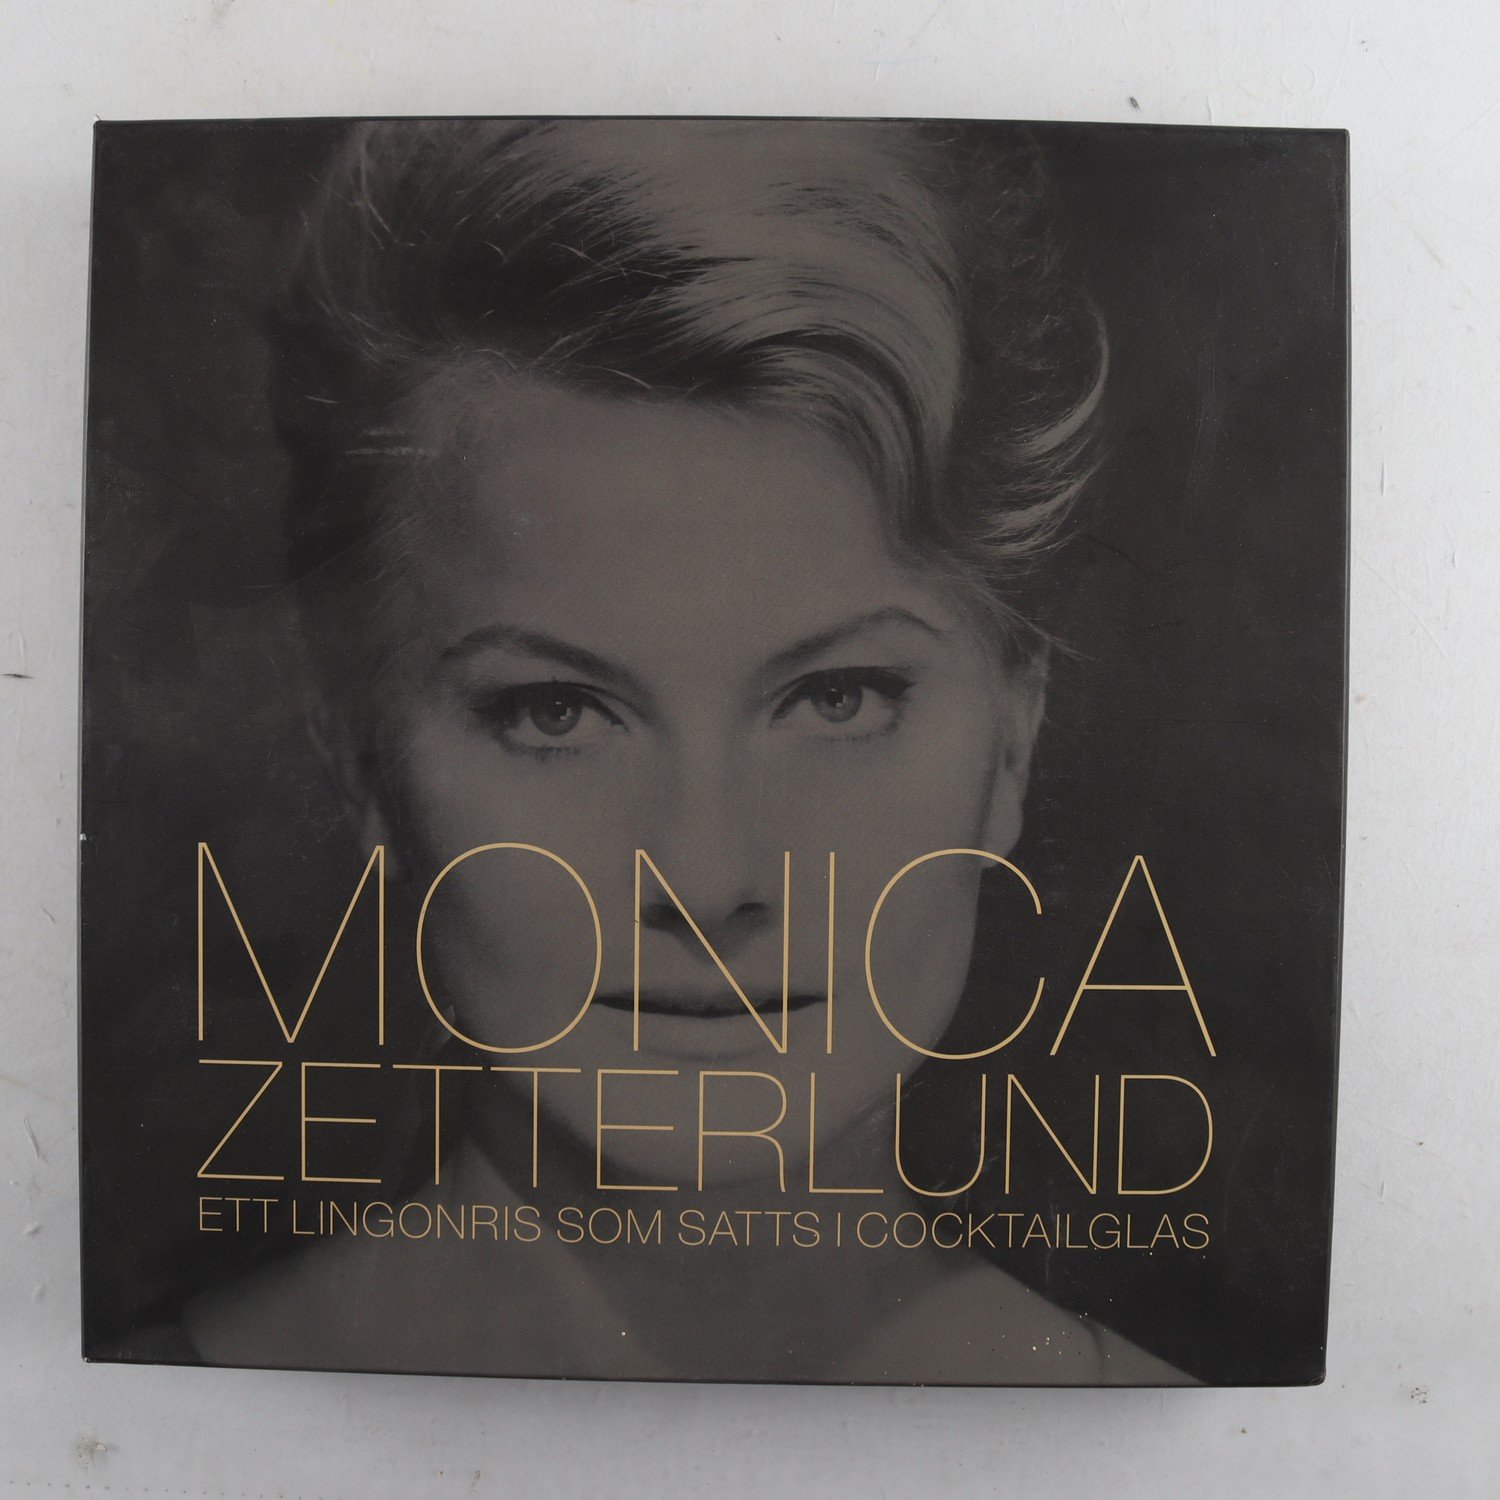 CD Monica Zetterlund, Ett lingonris som satts i cocktailglas